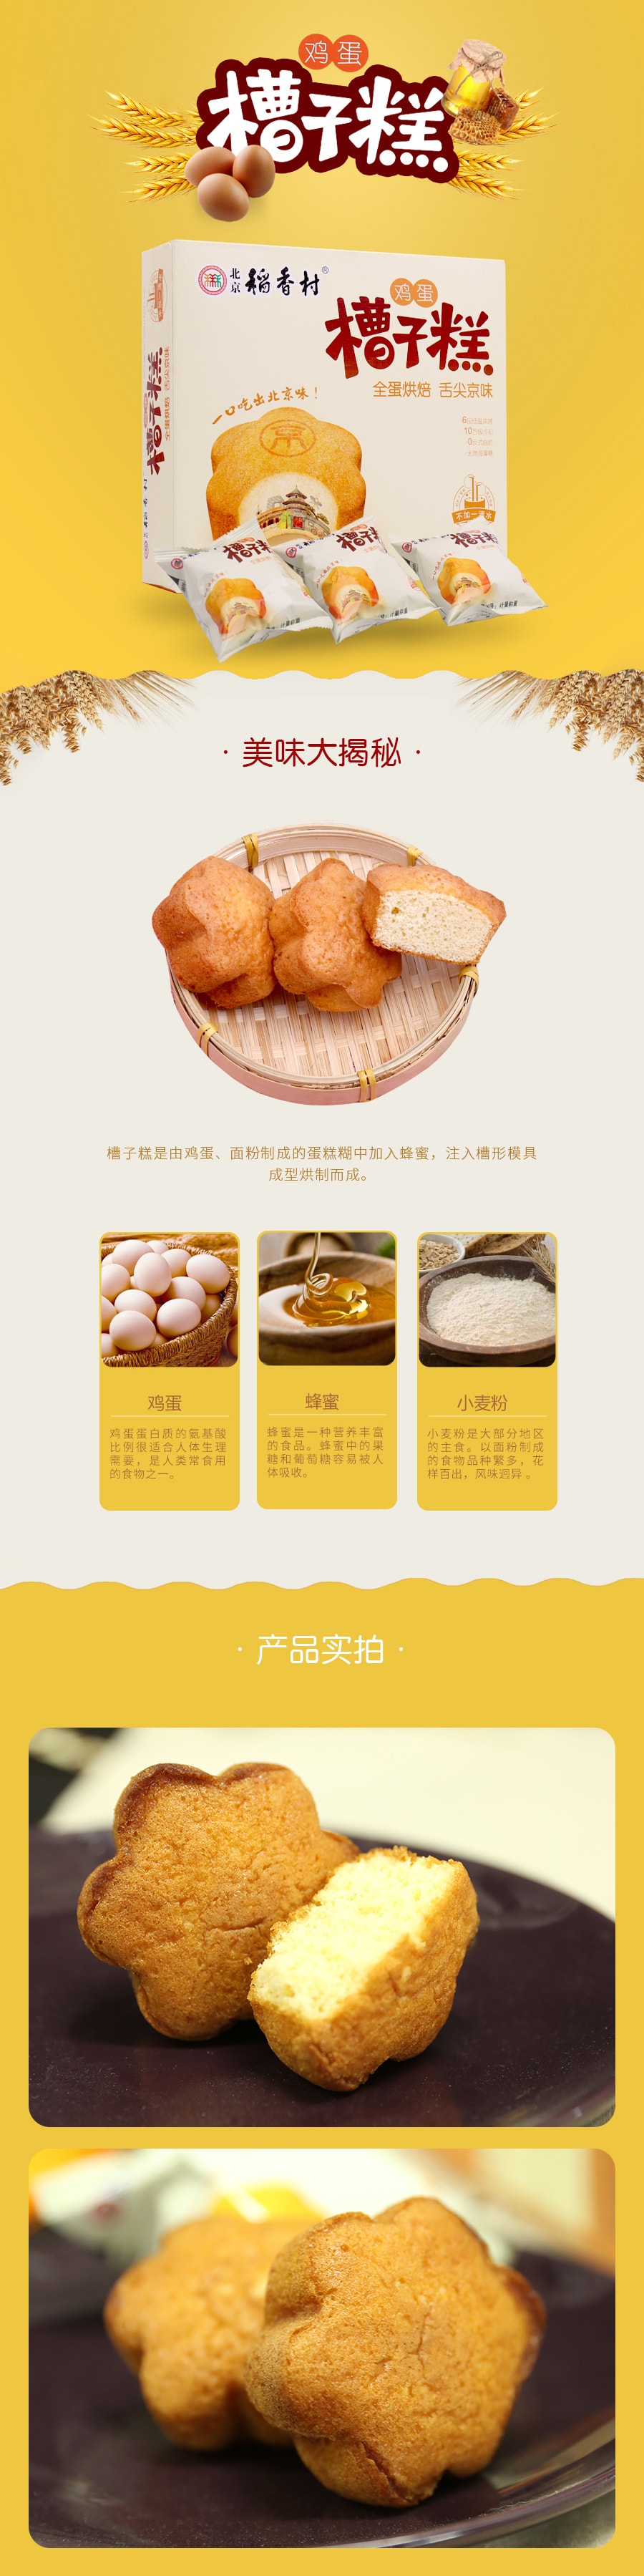 【中国直邮】北京稻香村 鸡蛋槽子糕 312g(下单7-10个工作日后发货)